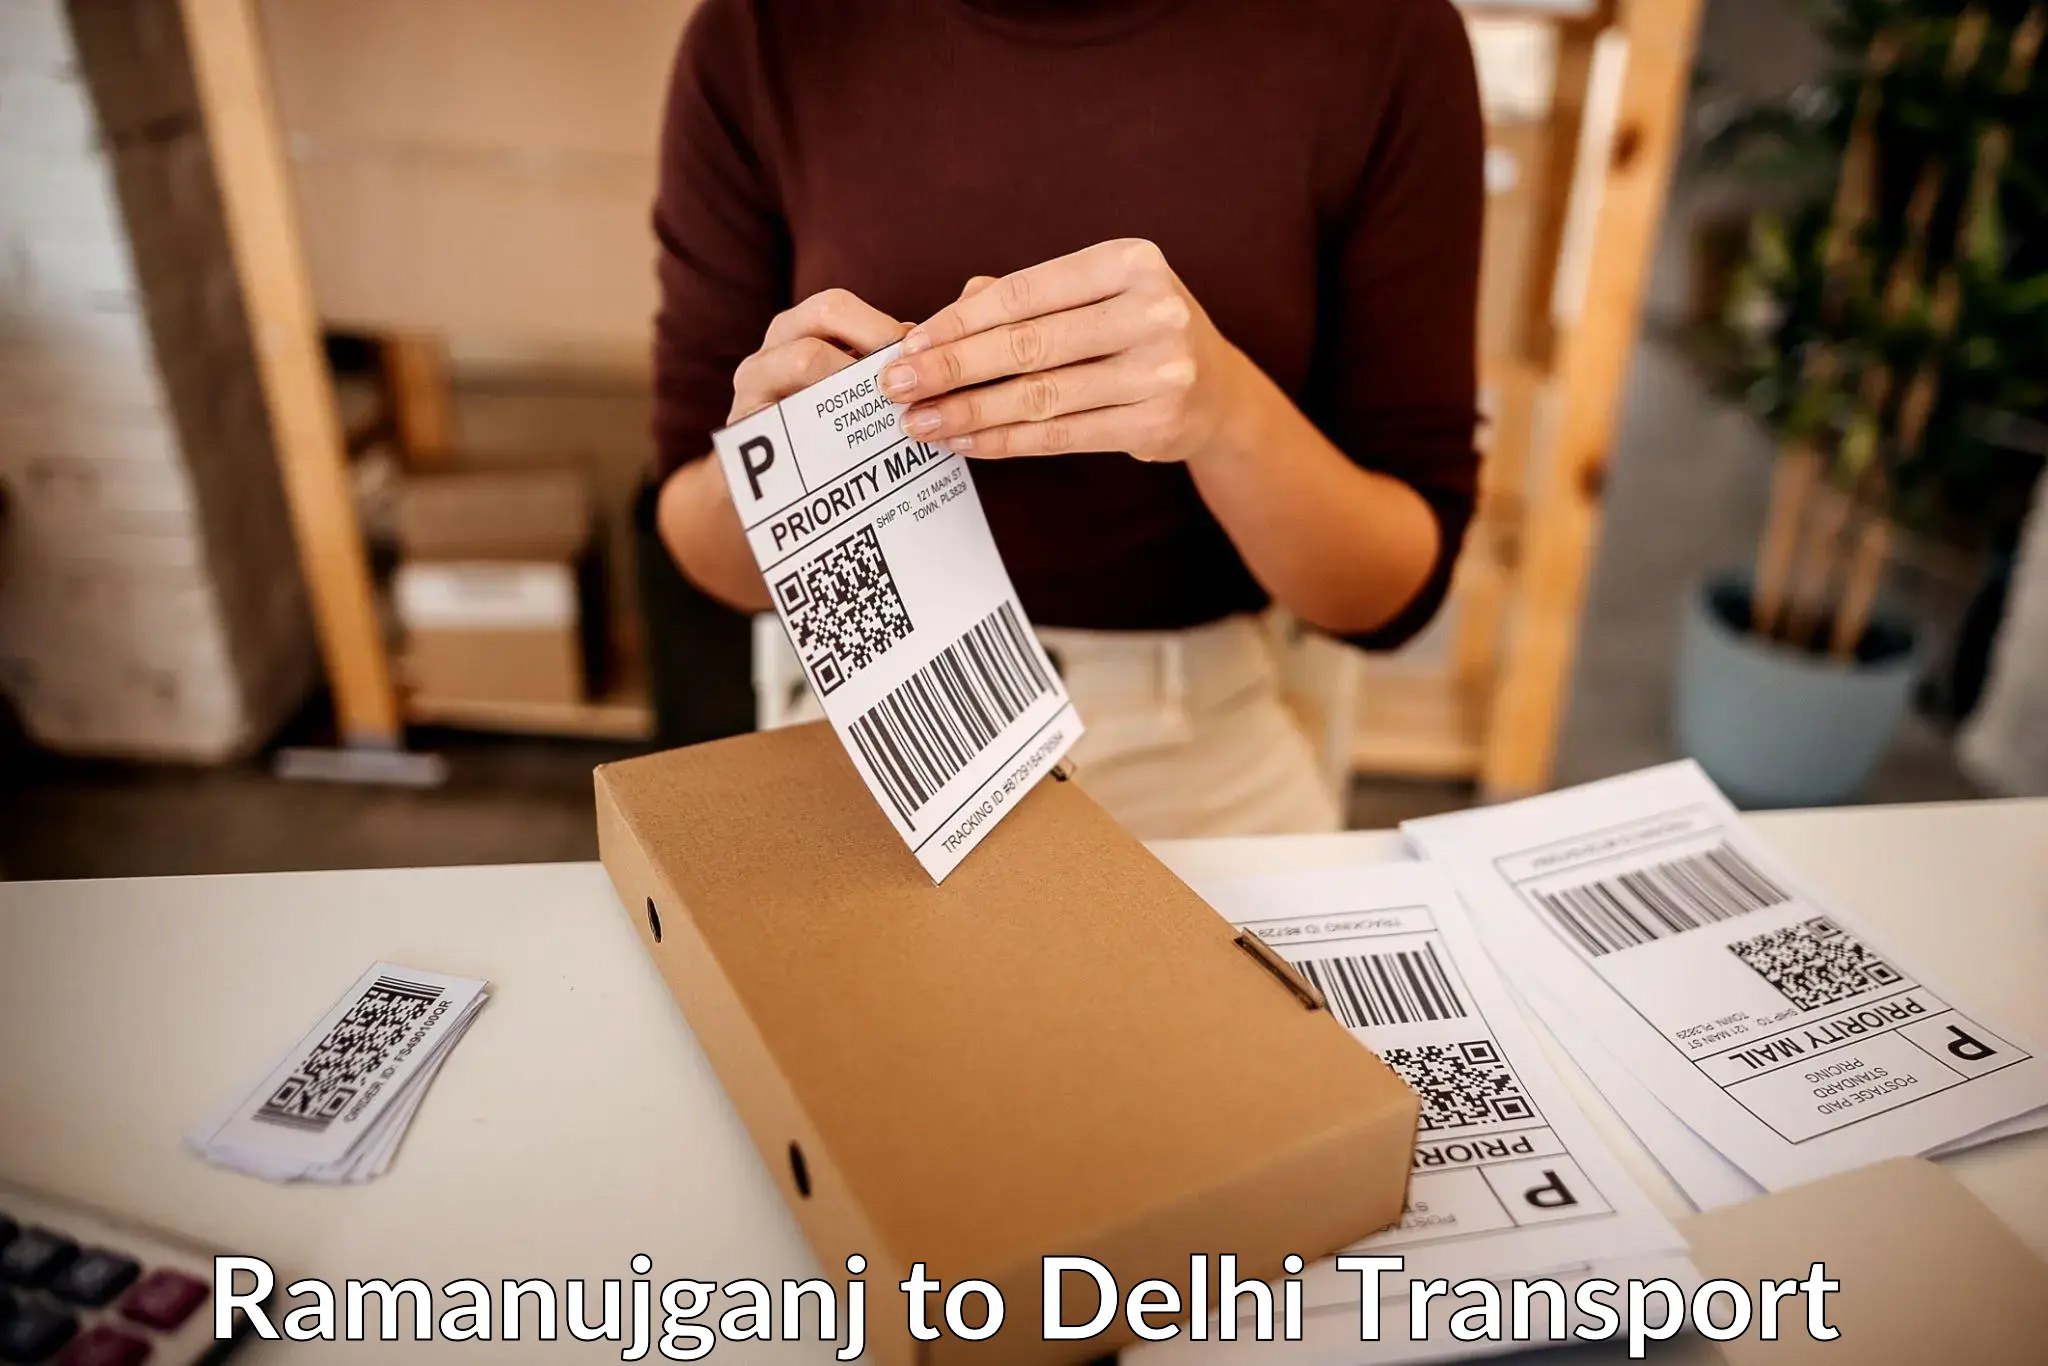 Nationwide transport services Ramanujganj to East Delhi